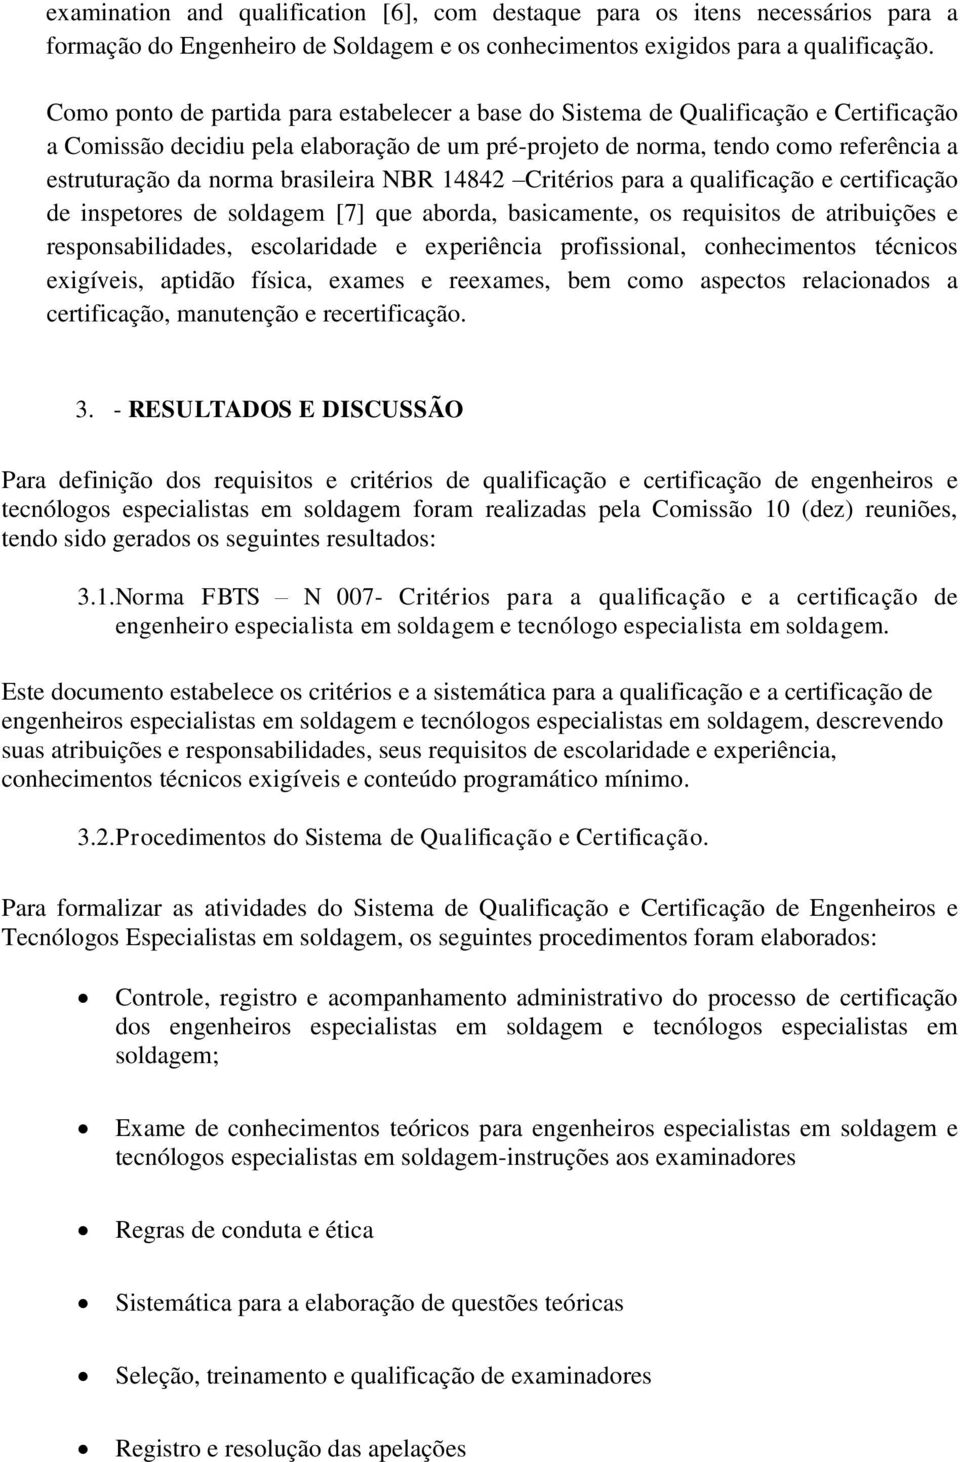 brasileira NBR 14842 Critérios para a qualificação e certificação de inspetores de soldagem [7] que aborda, basicamente, os requisitos de atribuições e responsabilidades, escolaridade e experiência